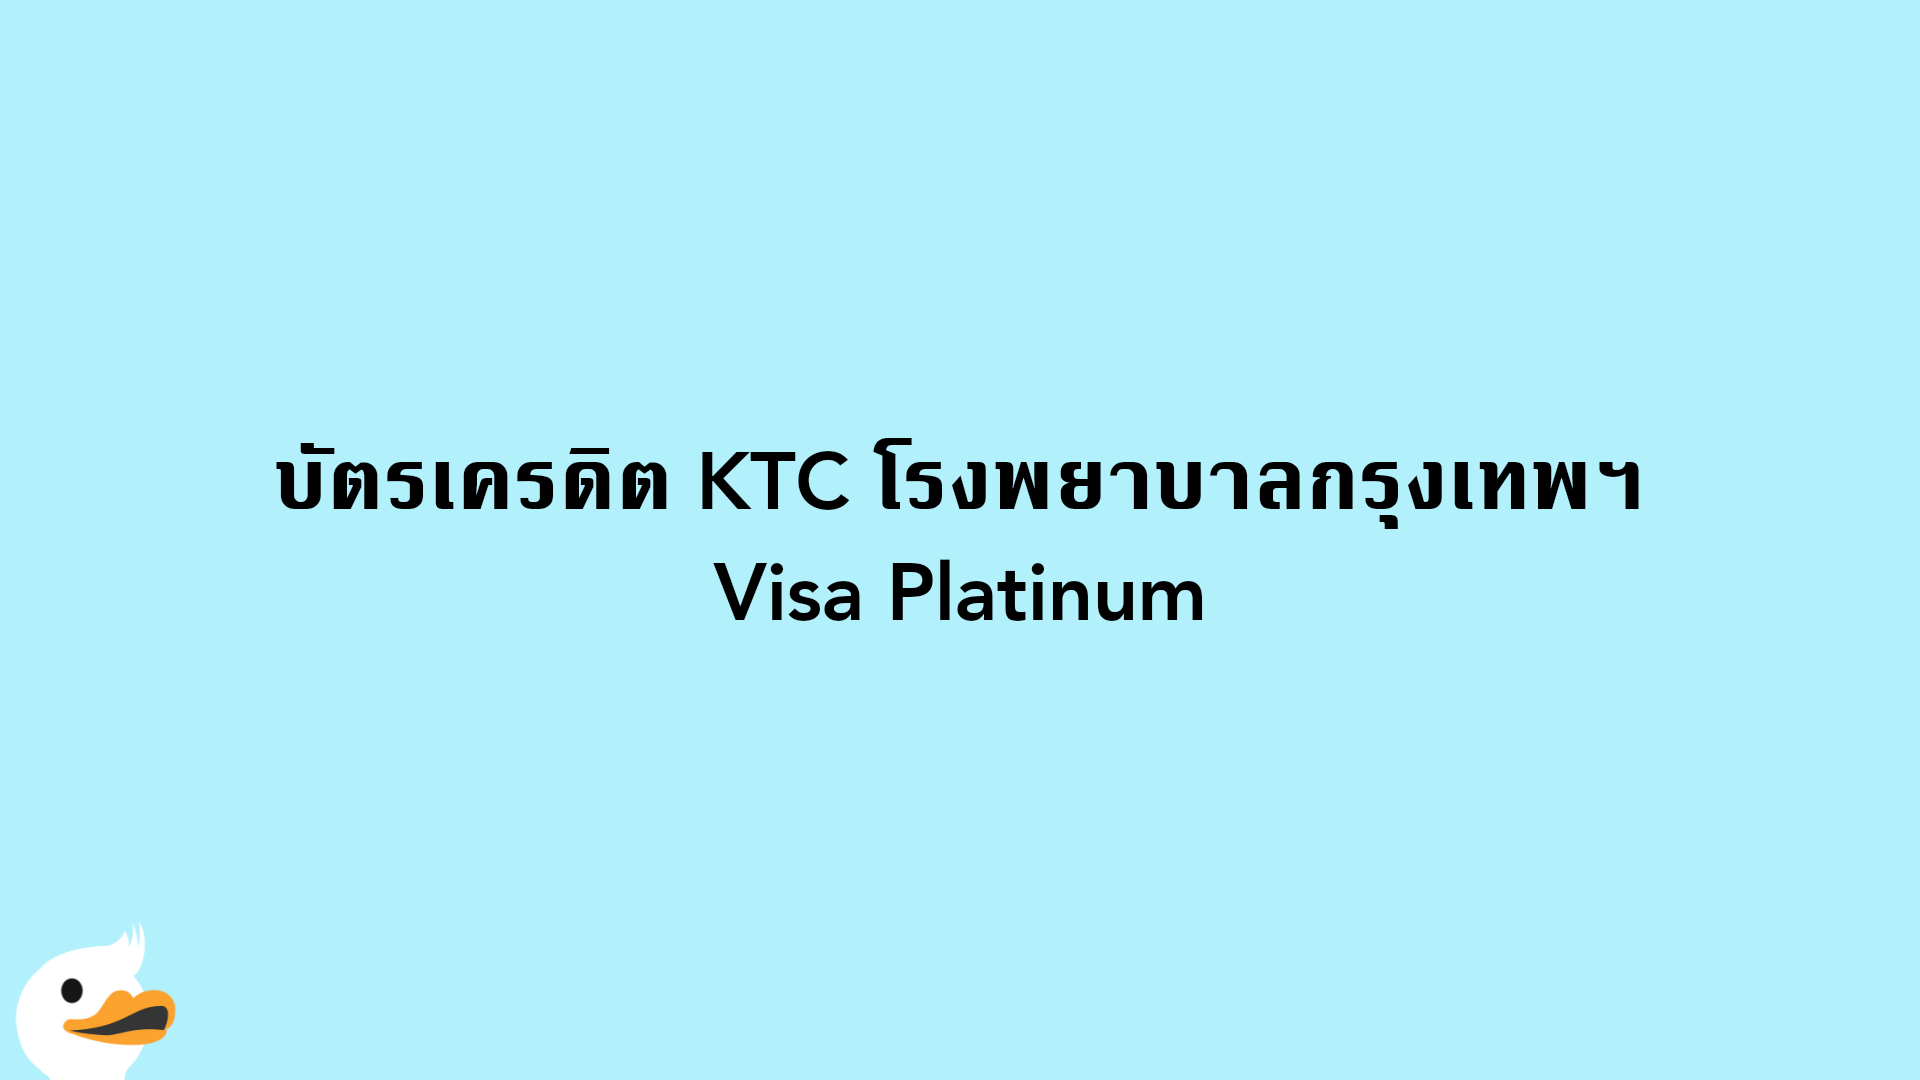 บัตรเครดิต KTC โรงพยาบาลกรุงเทพฯ Visa Platinum